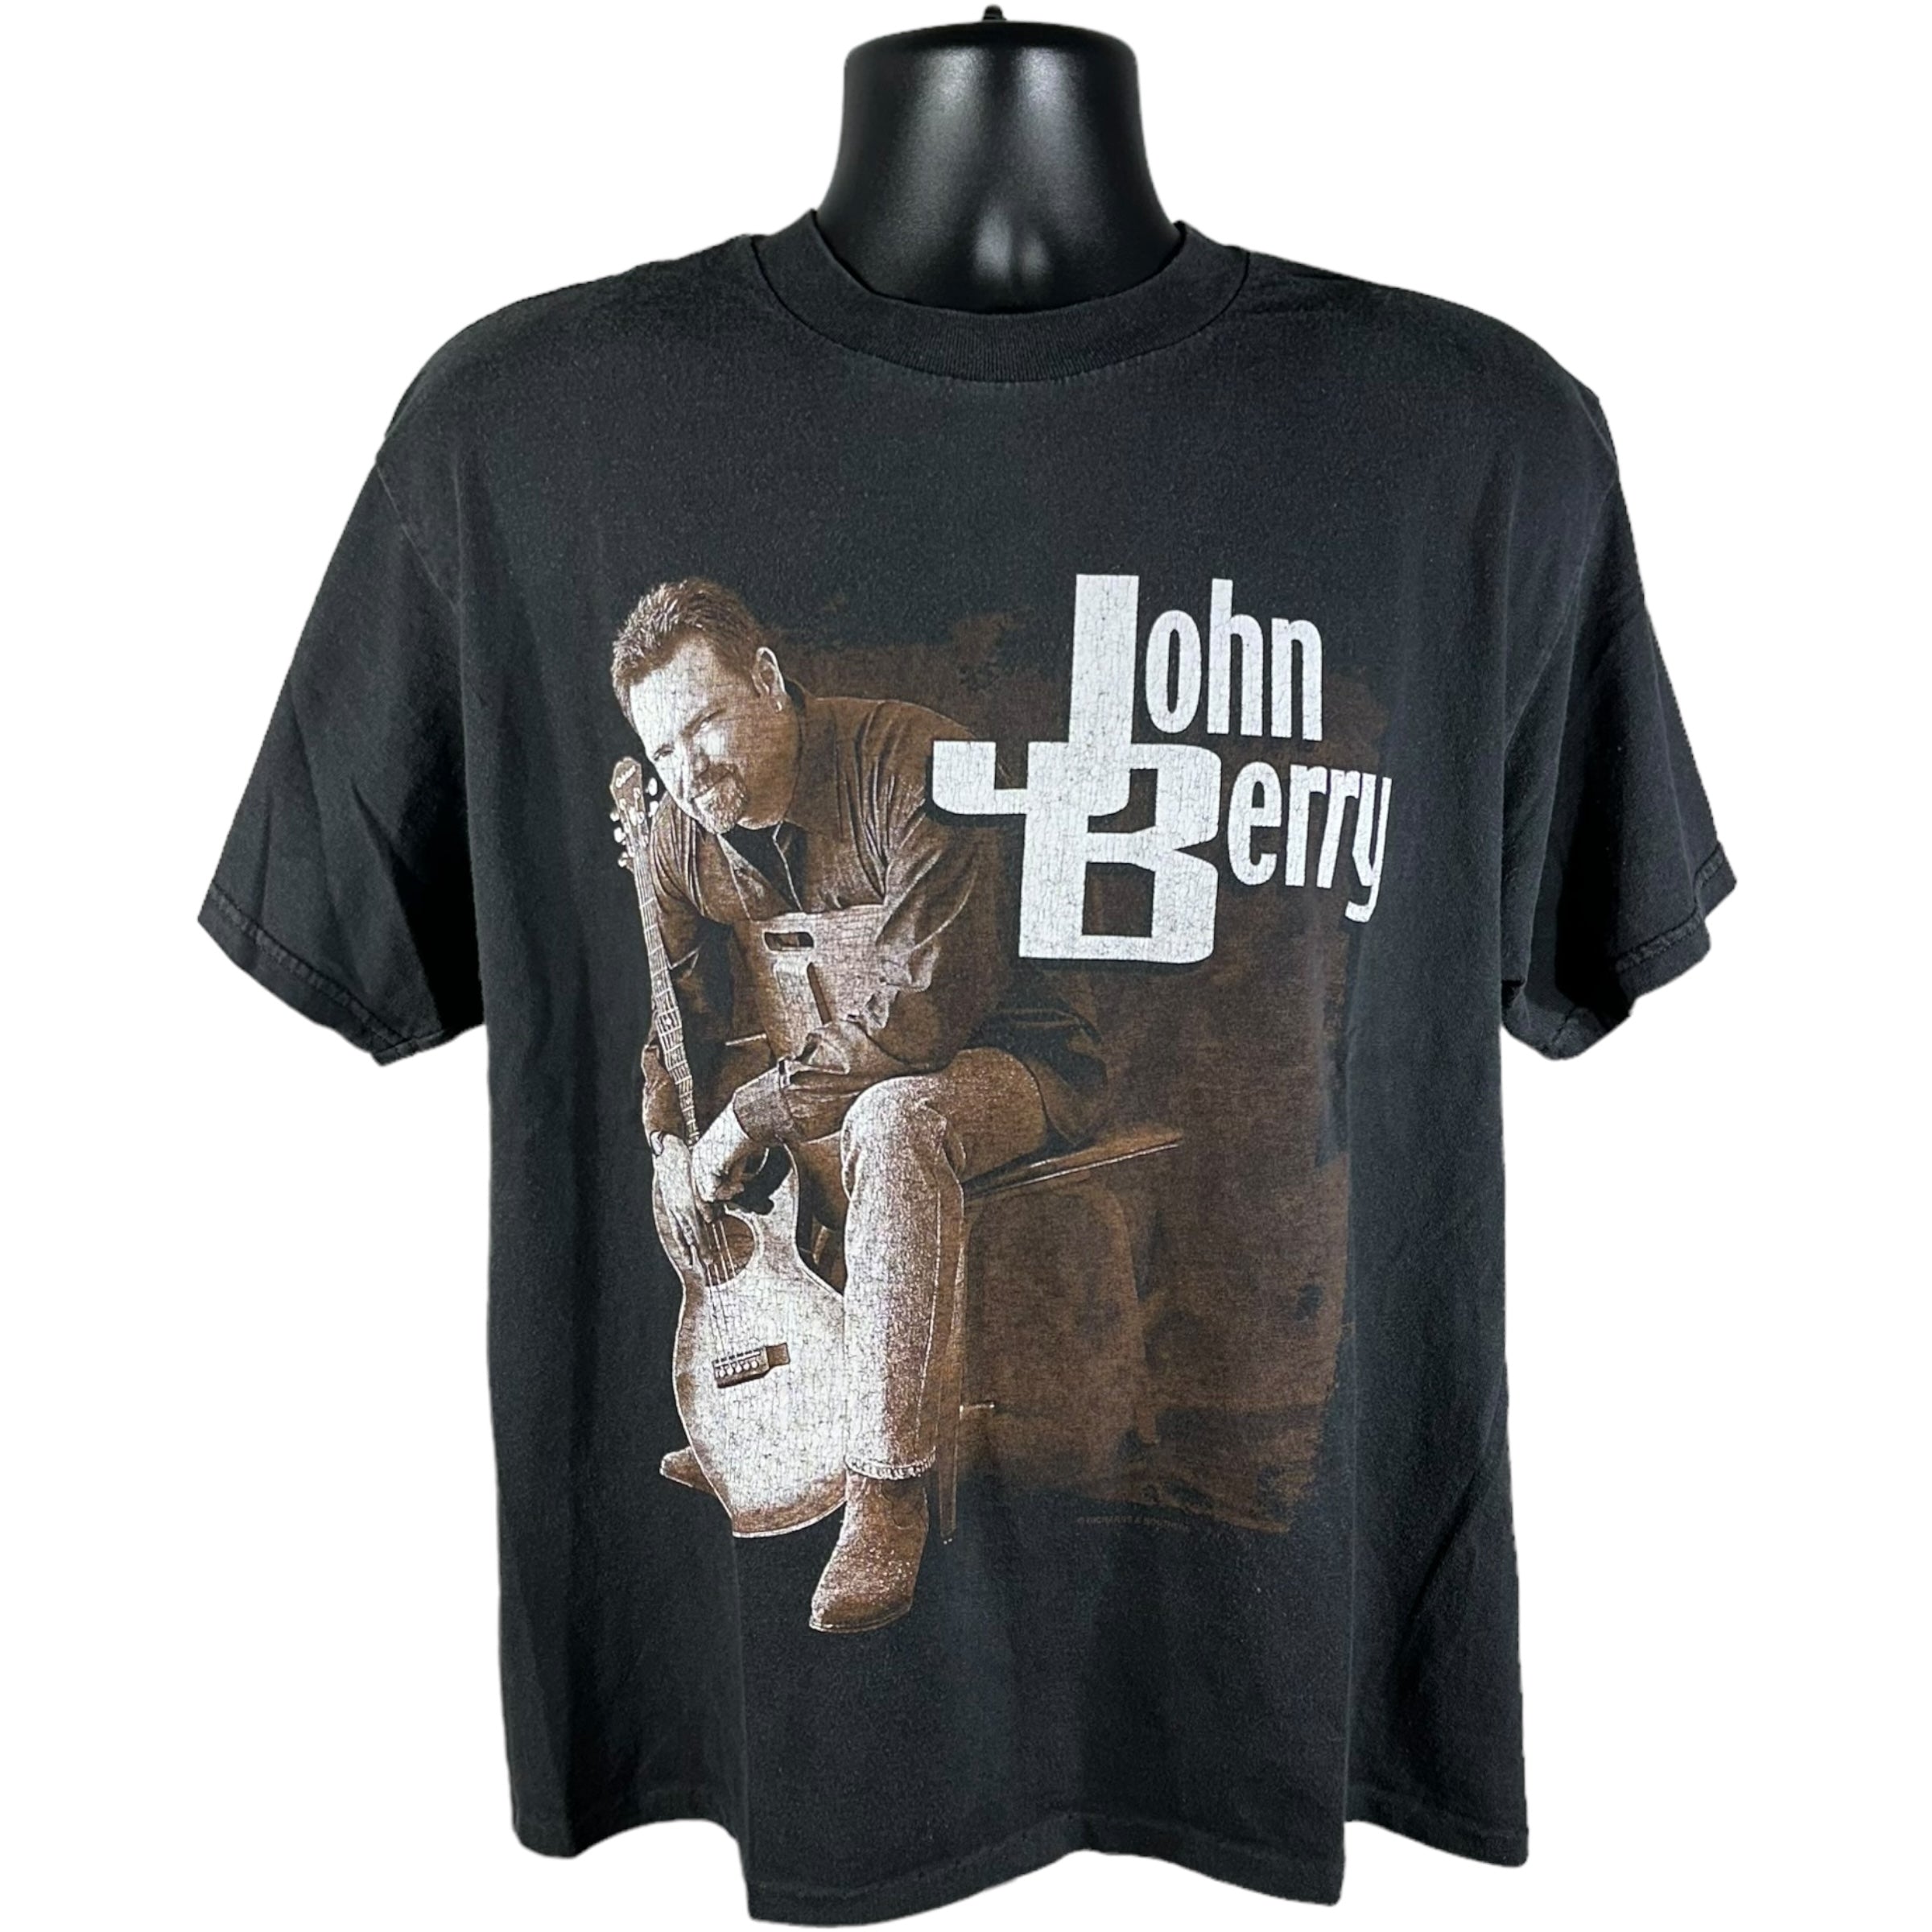 Vintage John Berry Tour Tee